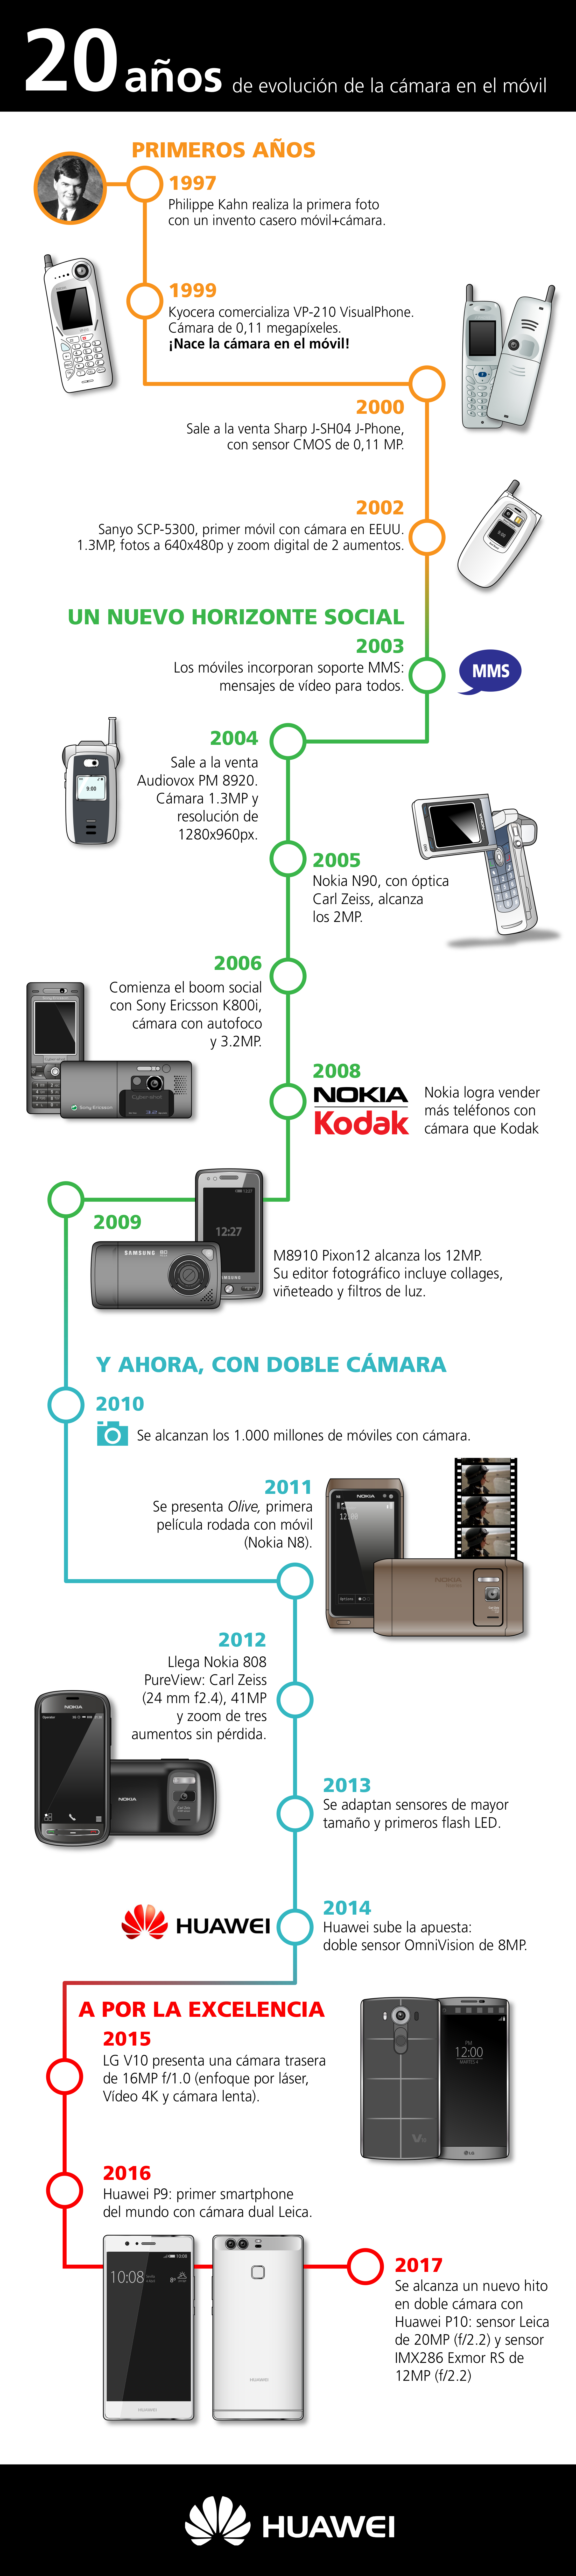 Infografía: 20 años de la cámara en el móvil